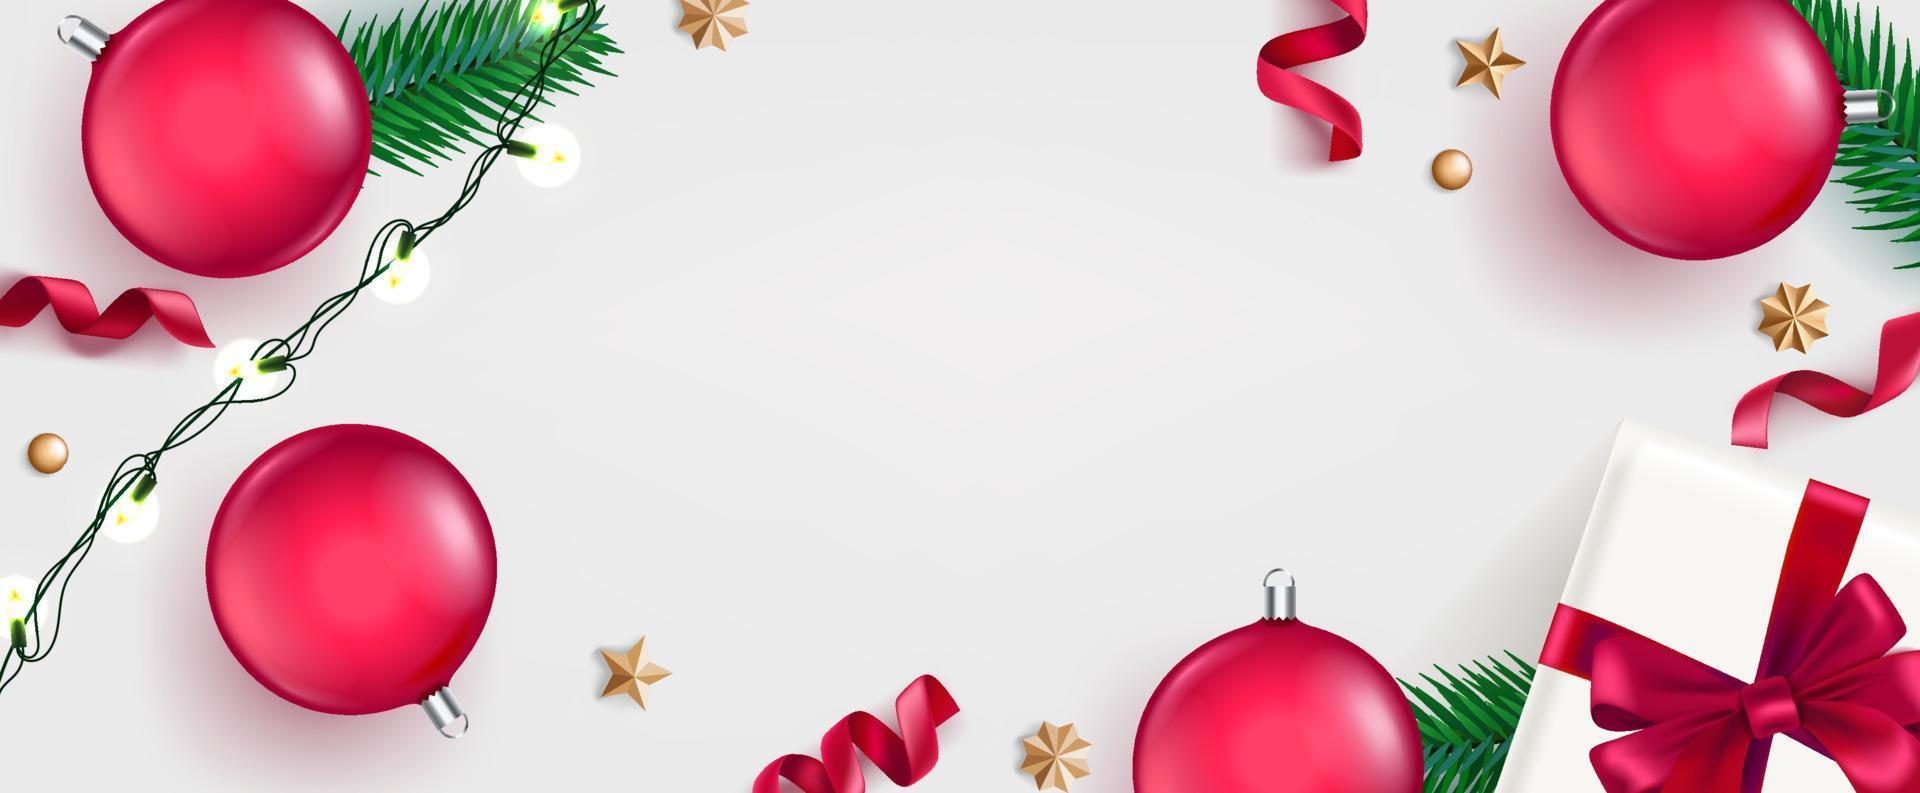 fondo plano de navidad con elementos navideños vector